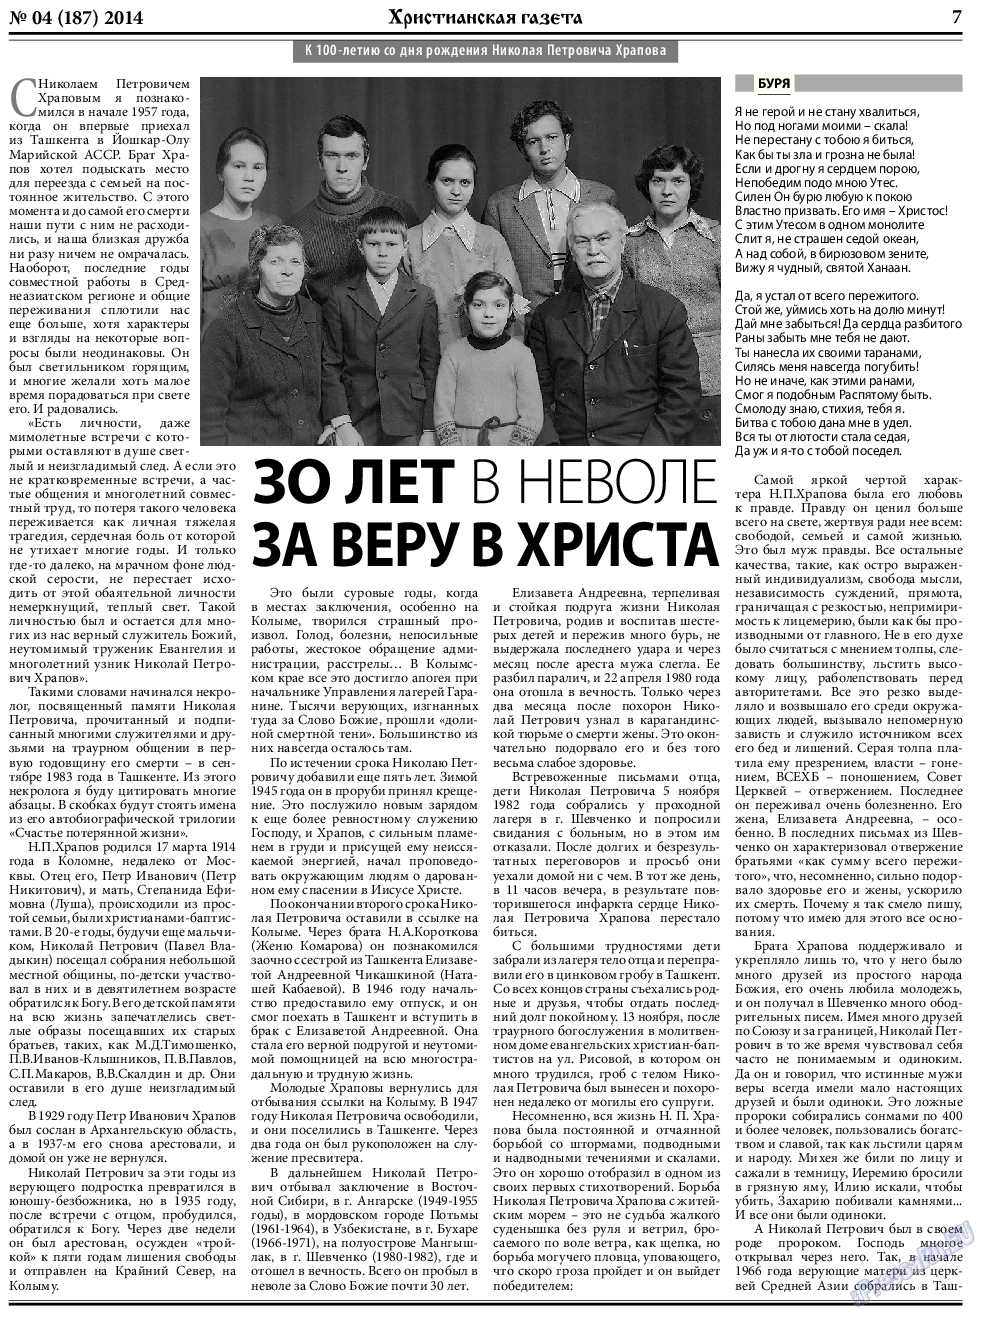 Христианская газета, газета. 2014 №4 стр.7